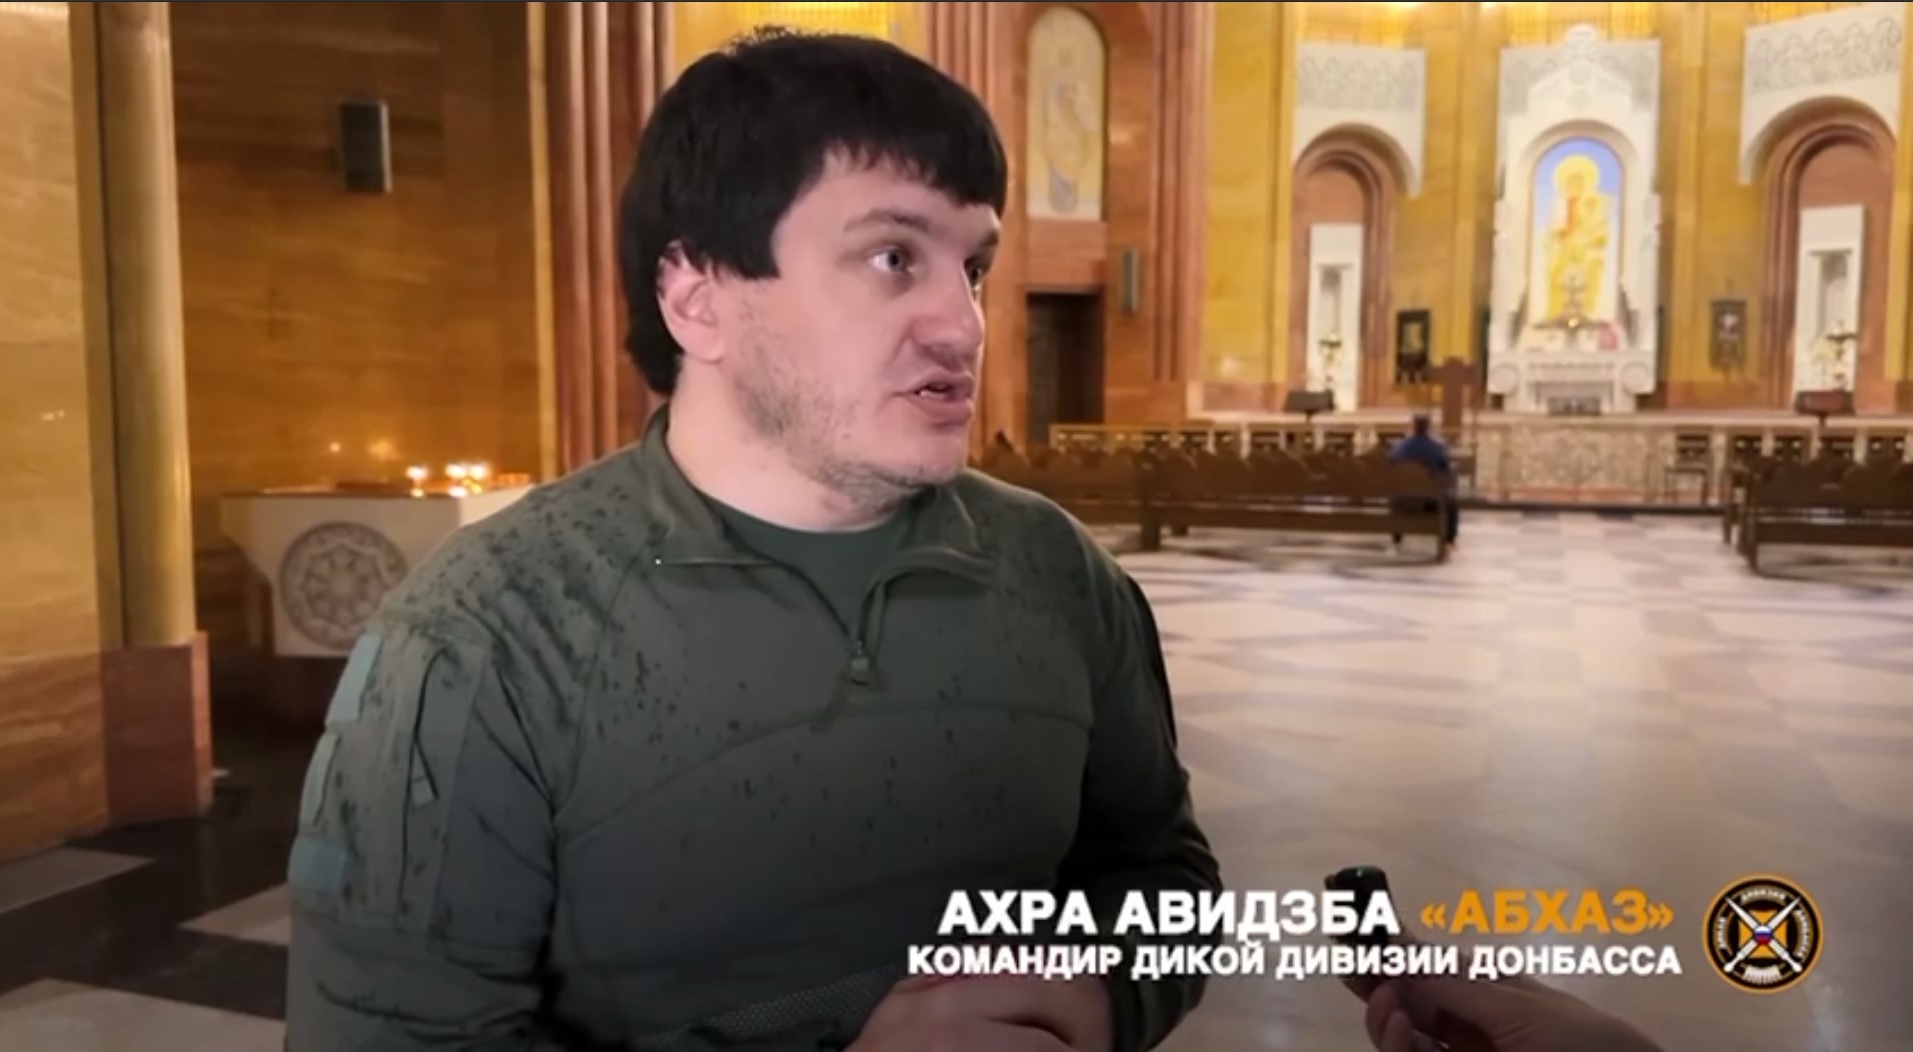 Армянская церковь Москвы благословила батальон на Донбасс